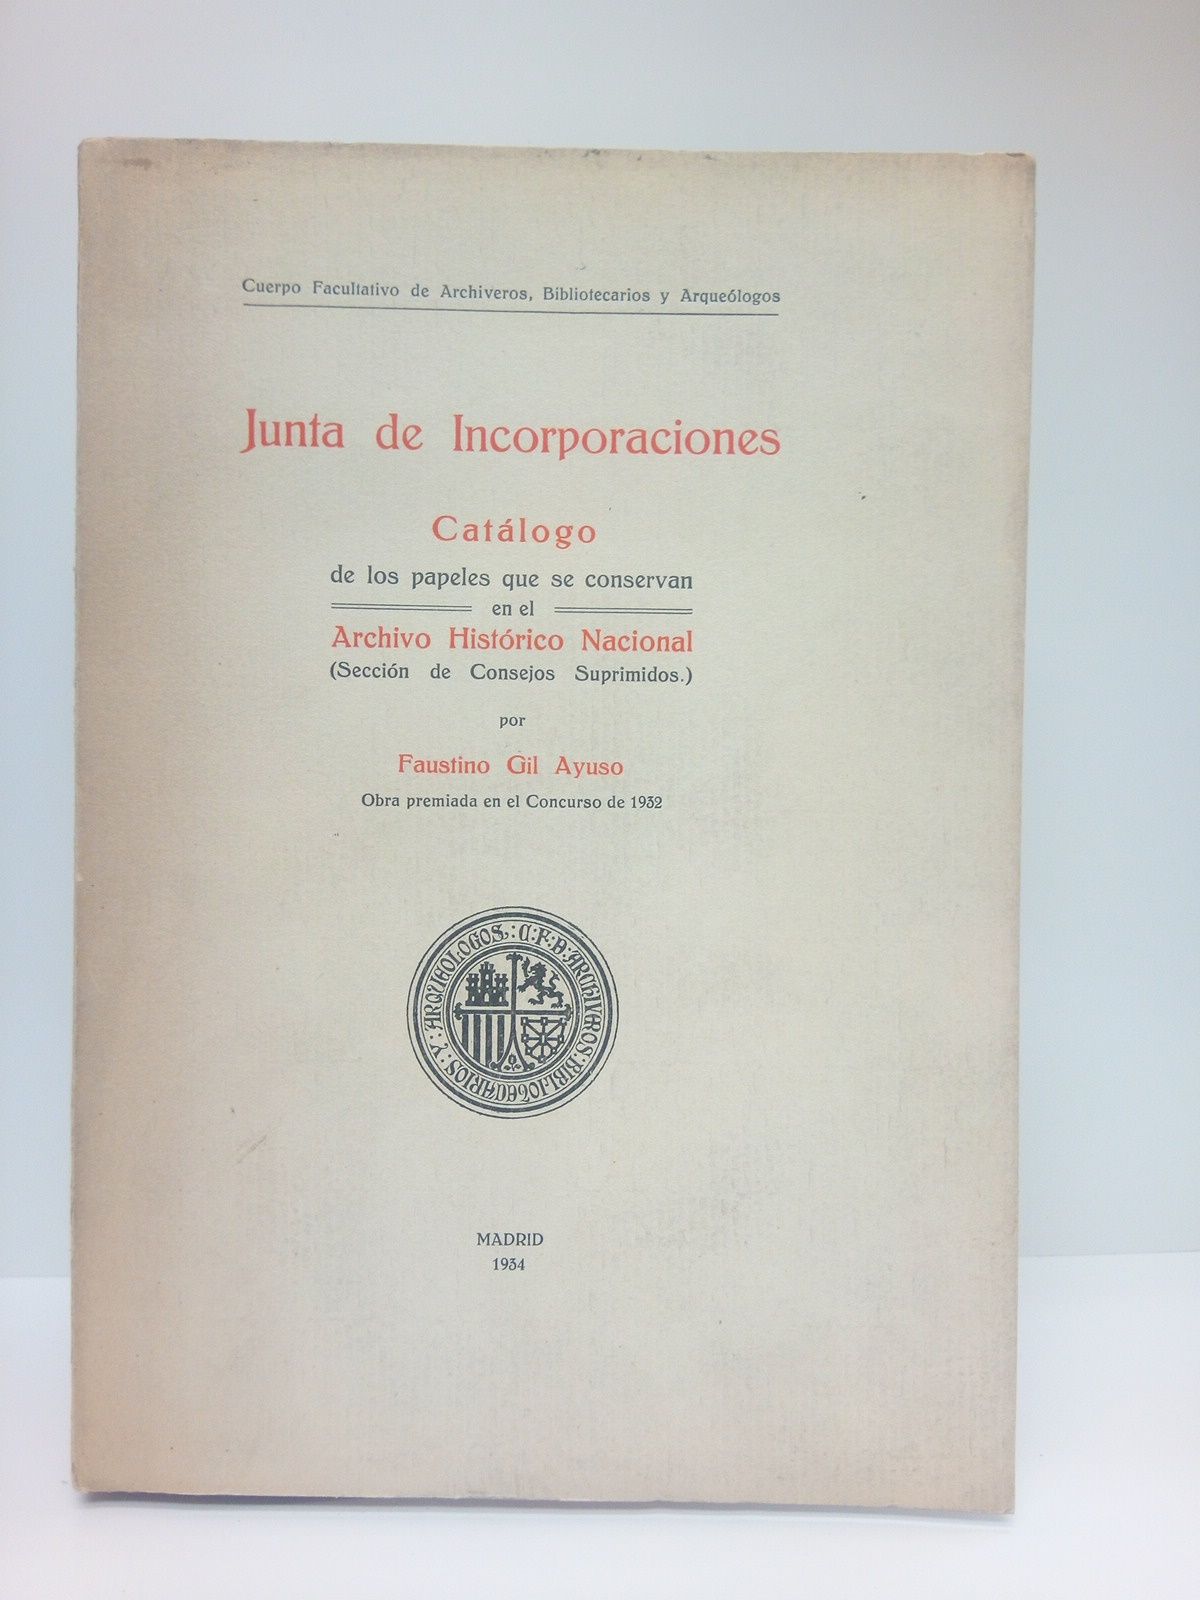 GIL AYUSO, Faustino - Junta de Incorporaciones: Catlogo de los papeles que se conservan en el Archivo Histrico Nacional (Seccin de Consejos Suprimidos)